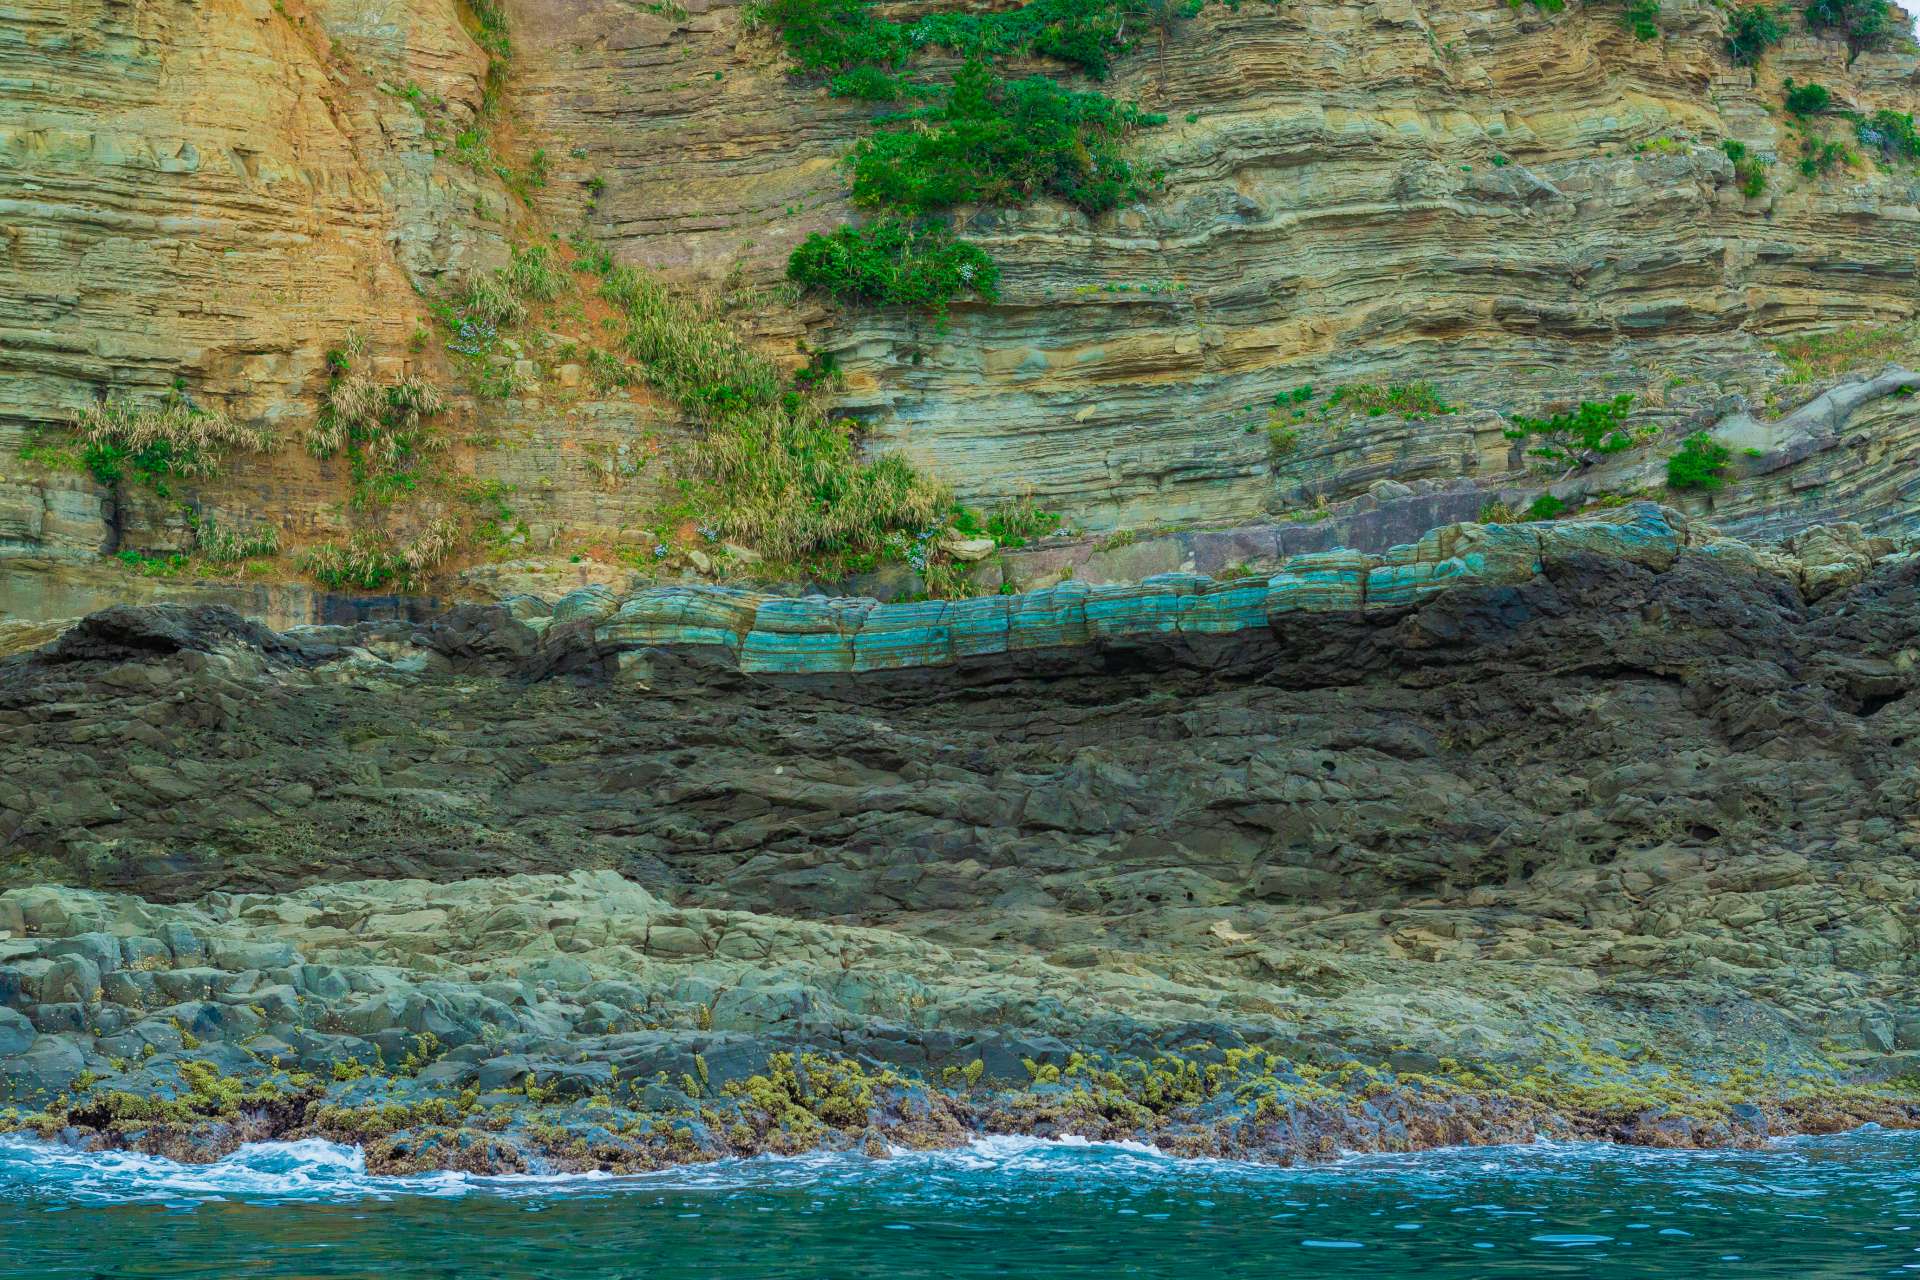 ¡Aproximación cercana a la roca! Observar las capas de fósiles es una de las atracciones del recorrido por los geositios.